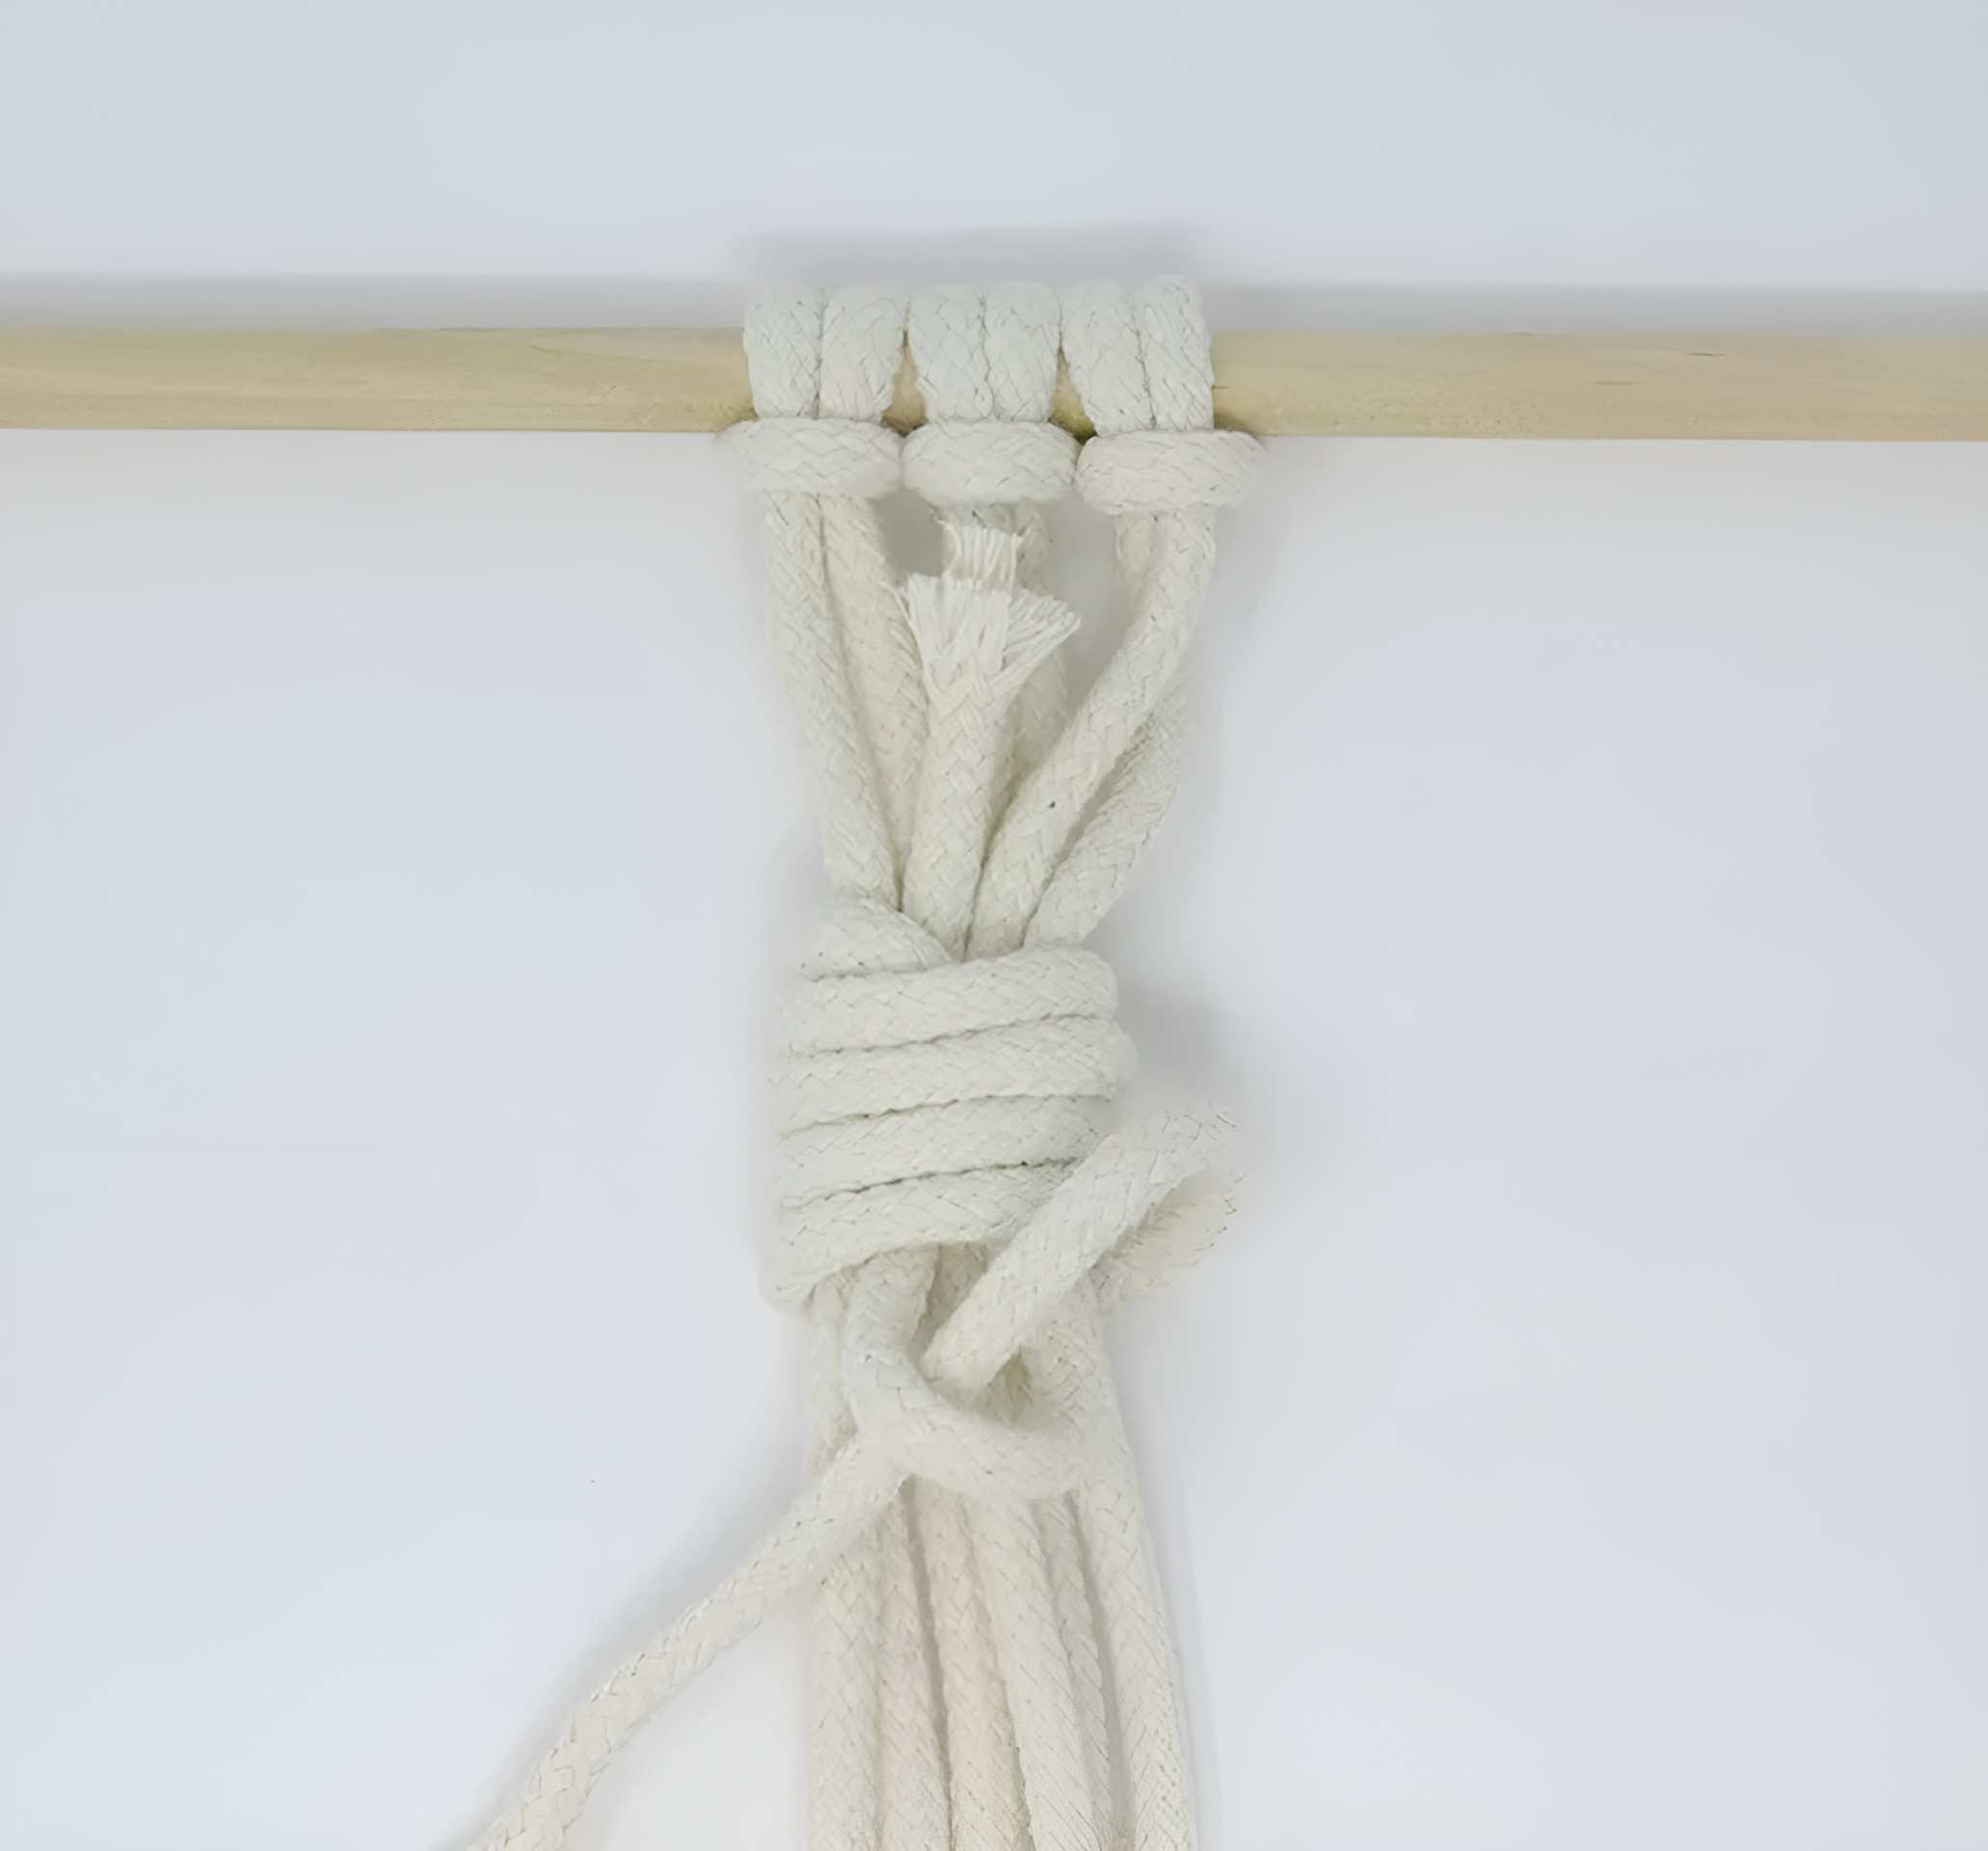 Kéo phần cuối của sợi dây đang hoạt động—được cắm ở trên cùng—lên trên, thao tác này sẽ đưa vòng dây vào bên trong. Kéo cho đến khi vòng lặp được bao bọc trong lớp bọc.